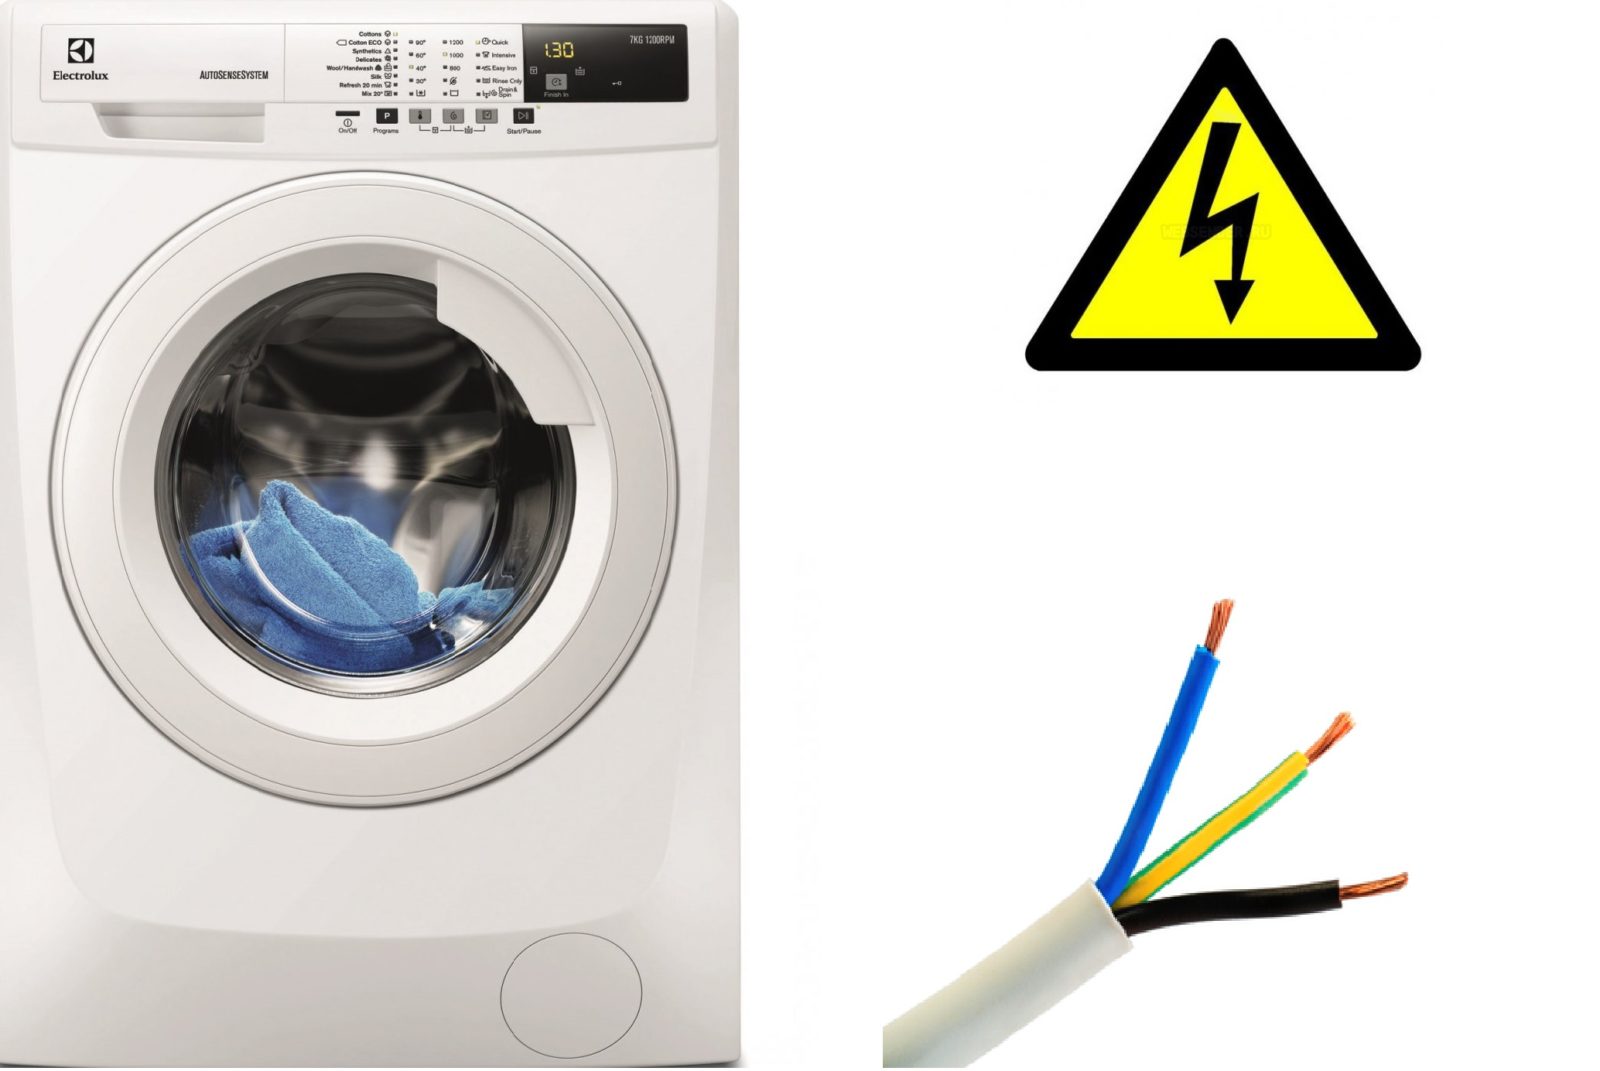 trådtverrsnitt for tilkobling av vaskemaskin